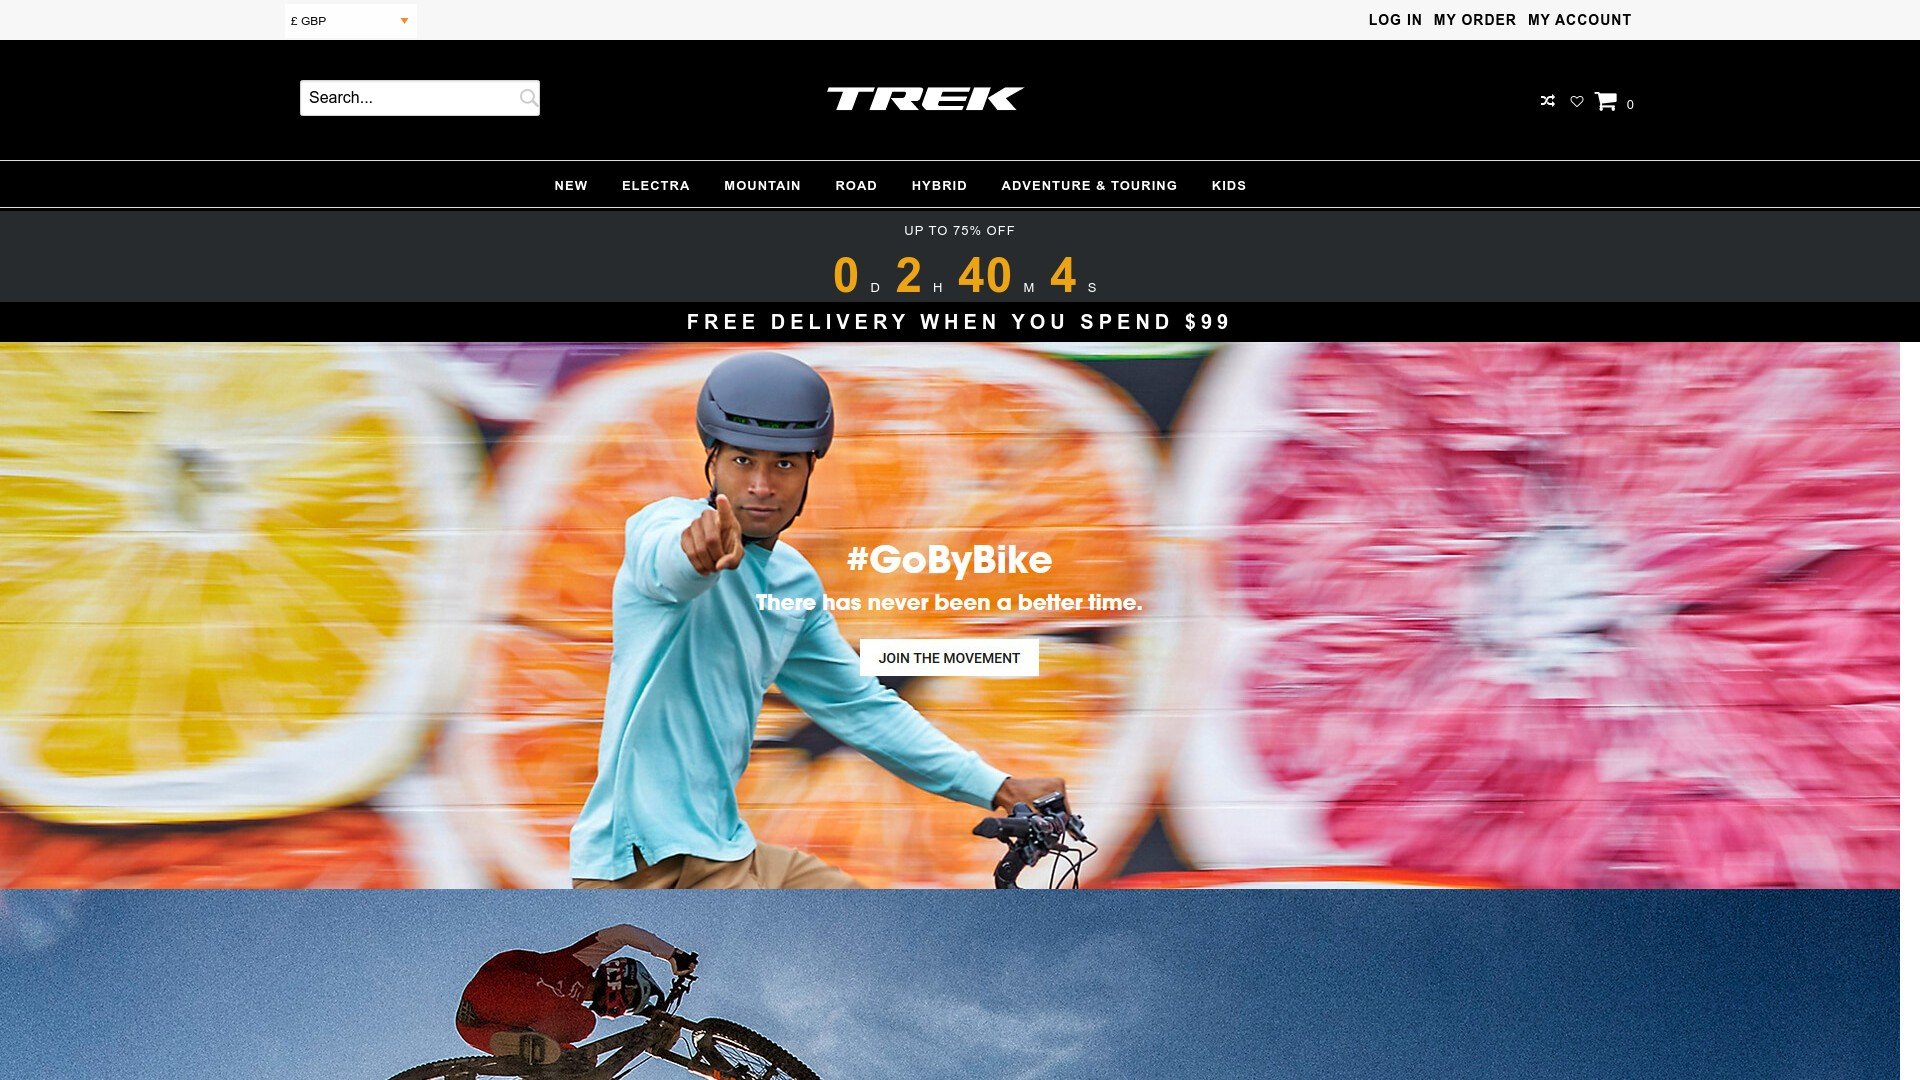 Terkbikemarket located at www.ek.terkbikemarket.com